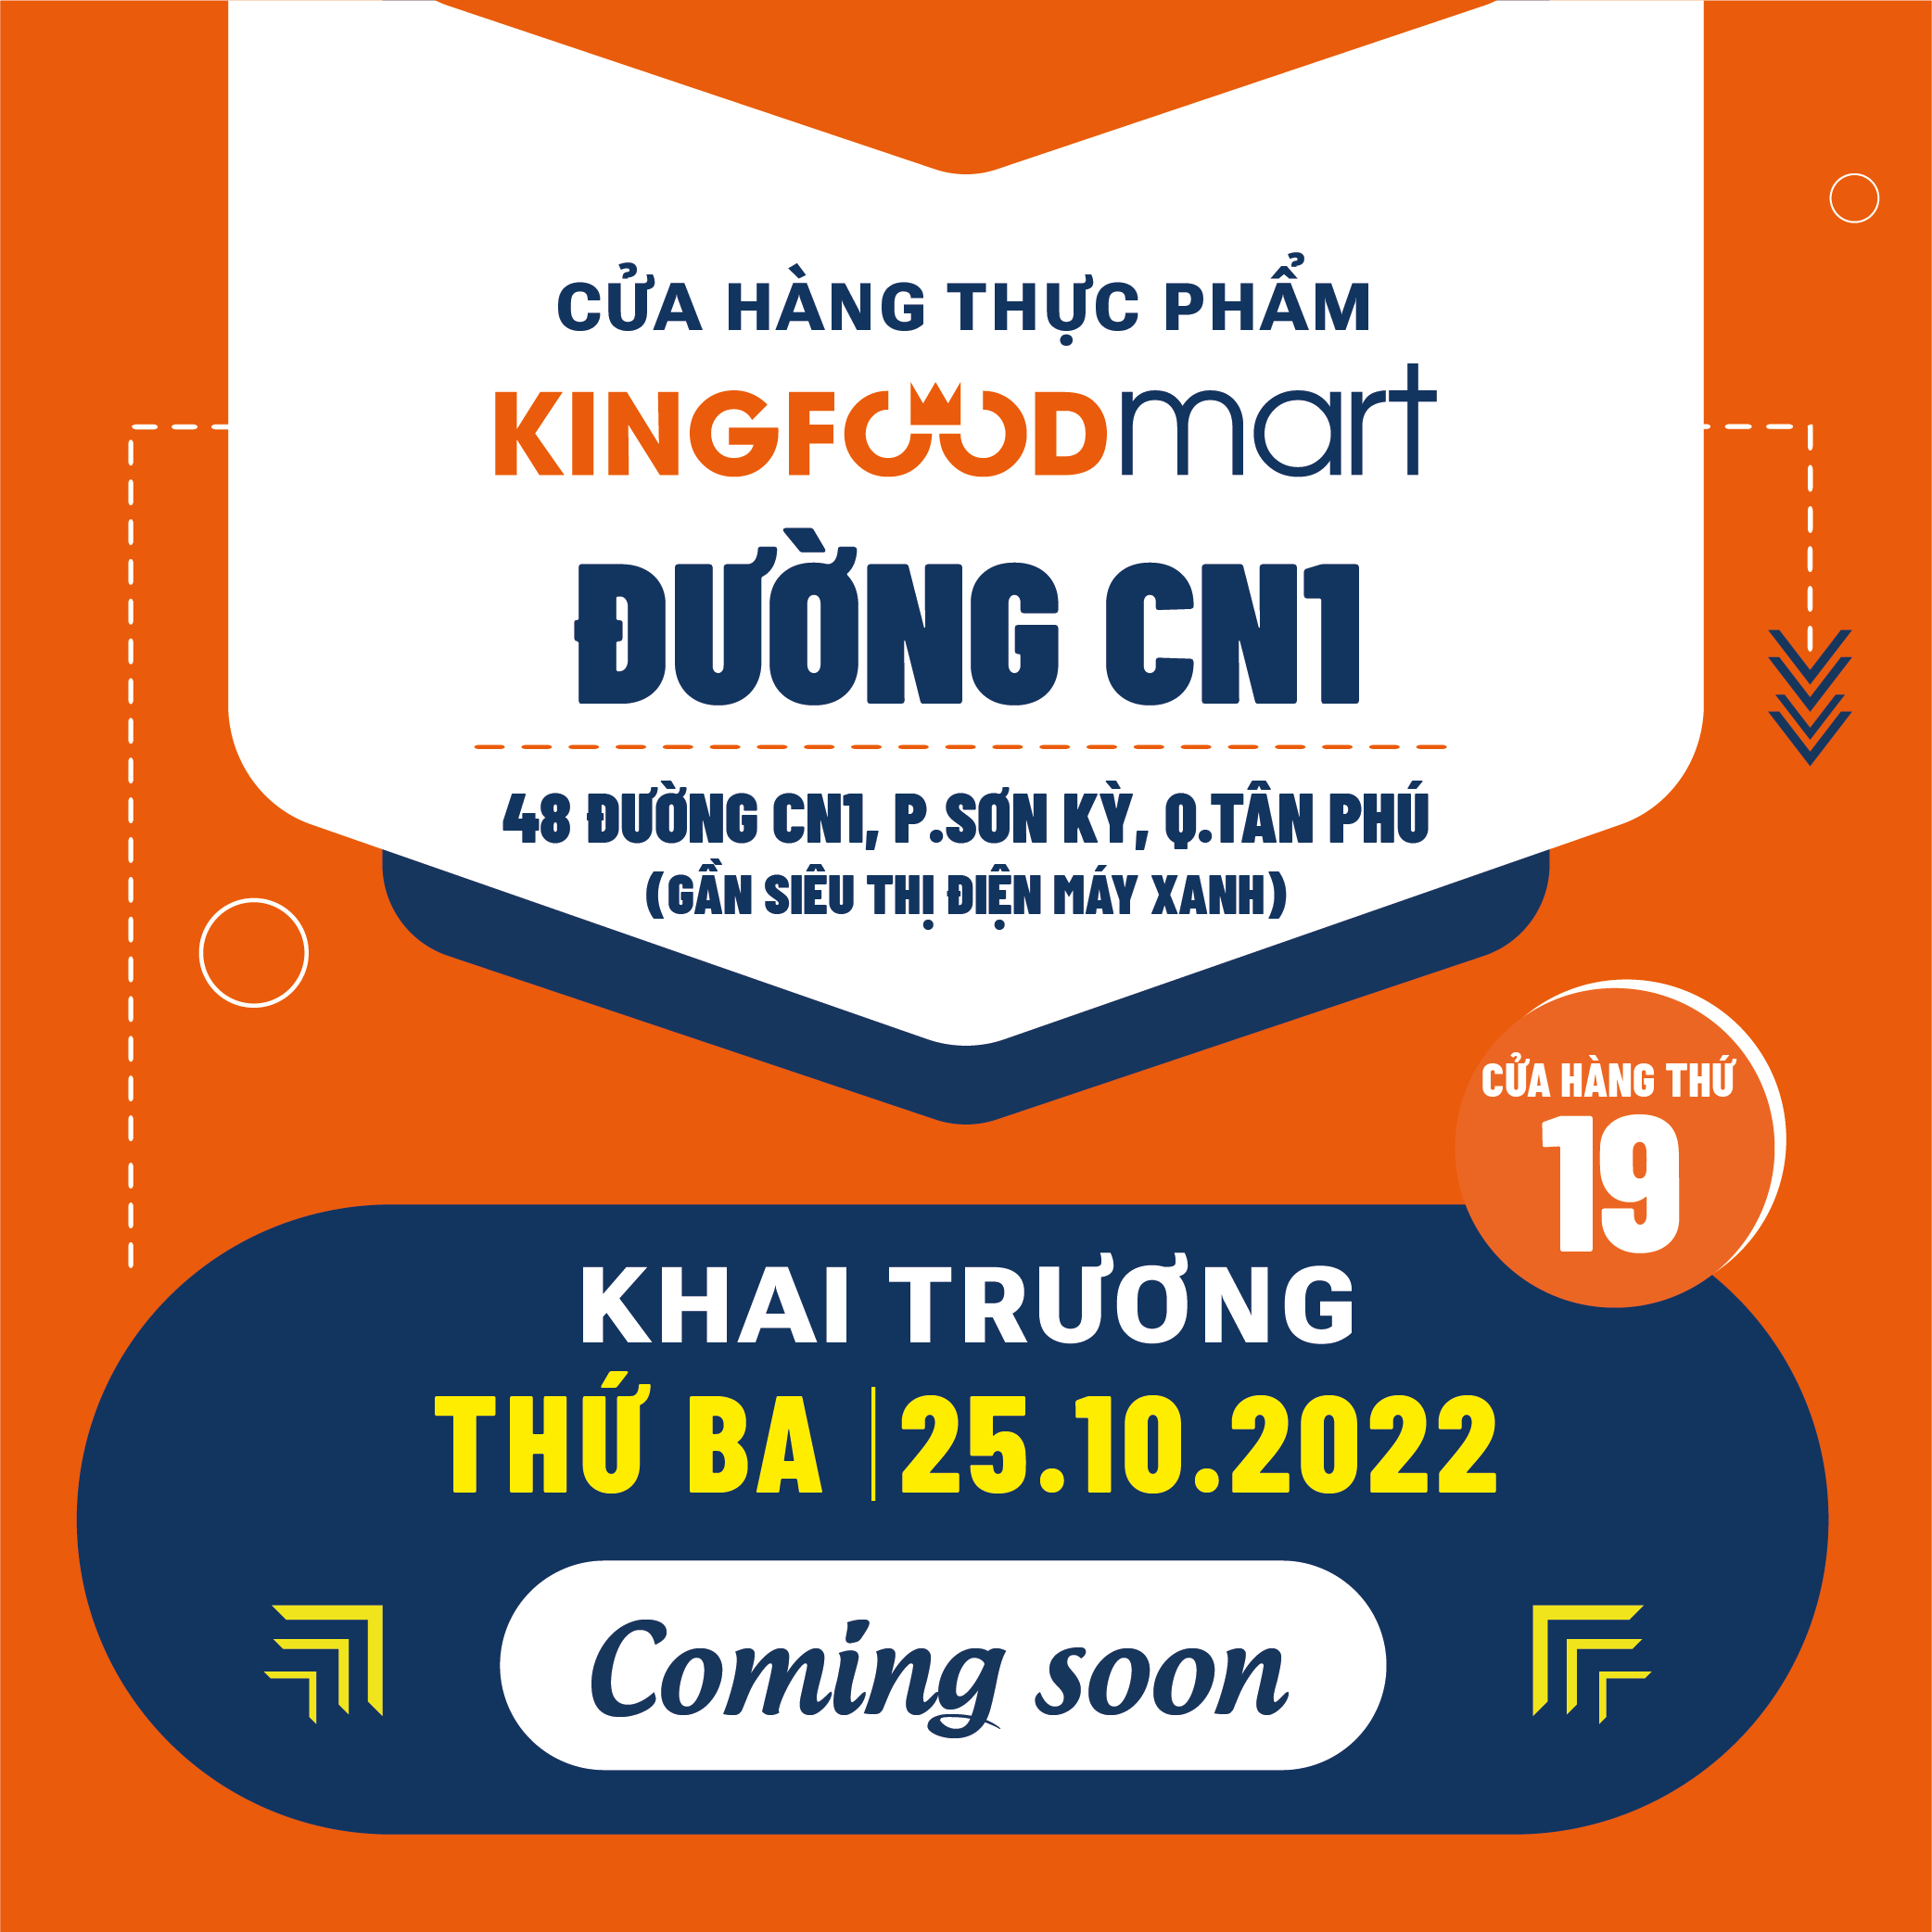 Ưu Đãi Ngập Tràn Mừng Khai Trương Kingfoodmart Đường CN1